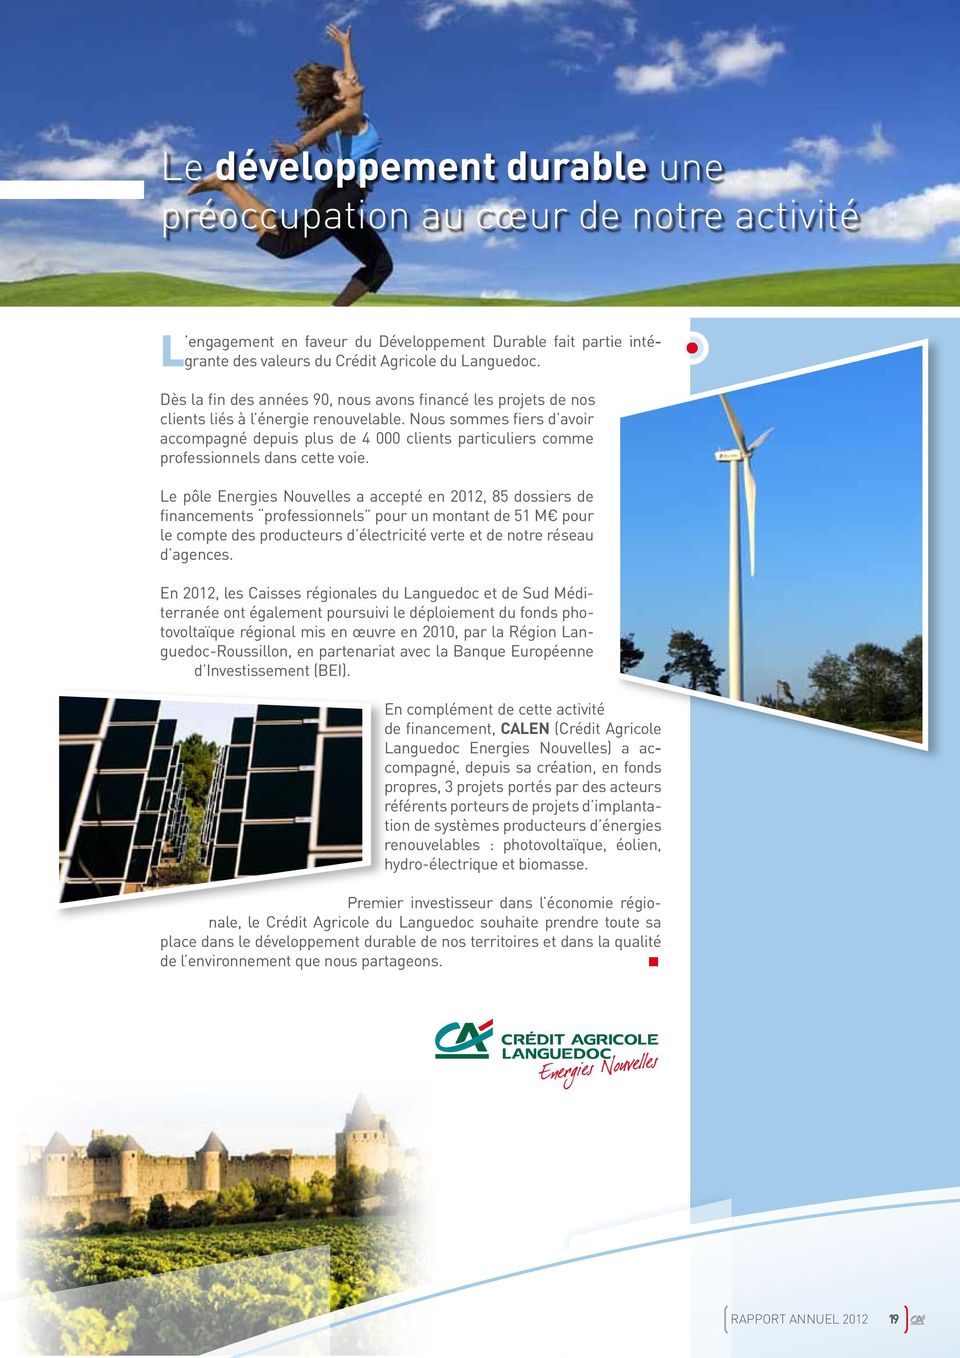 le pôle energies nouvelles a accepté en 2012, 85 dossiers de financements professionnels pour un montant de 51 M pour le compte des producteurs d électricité verte et de notre réseau d agences.